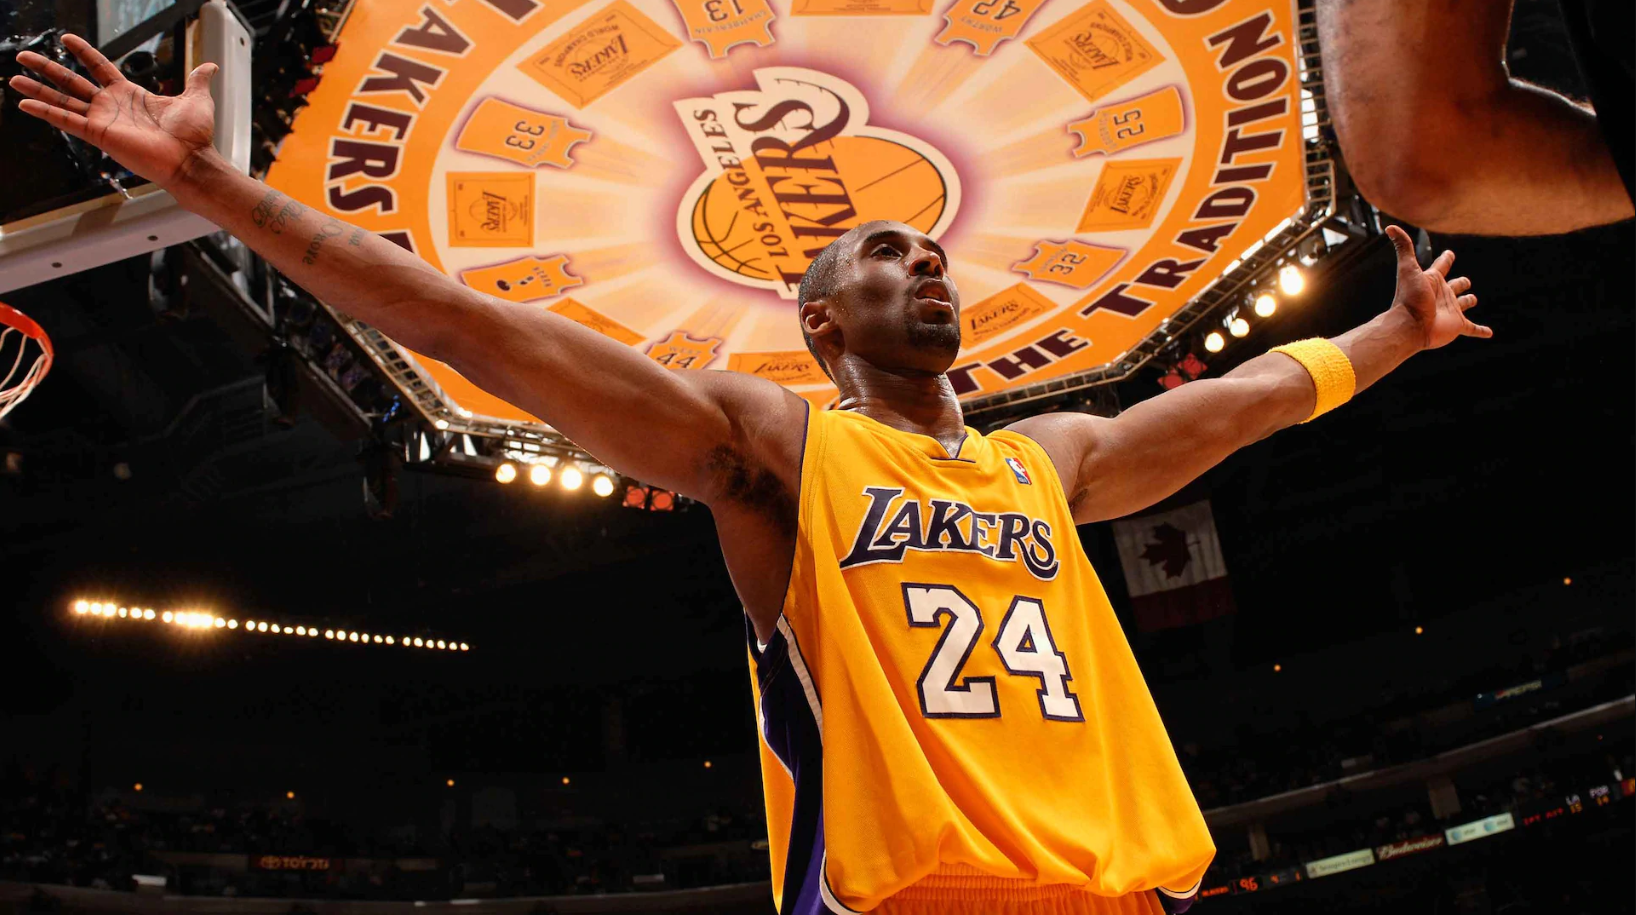 Một năm sau ngày định mệnh, liệu Los Angeles Lakers đã vượt qua được nỗi buồn mang tên &quot;Kobe Bryant&quot;? - Ảnh 5.